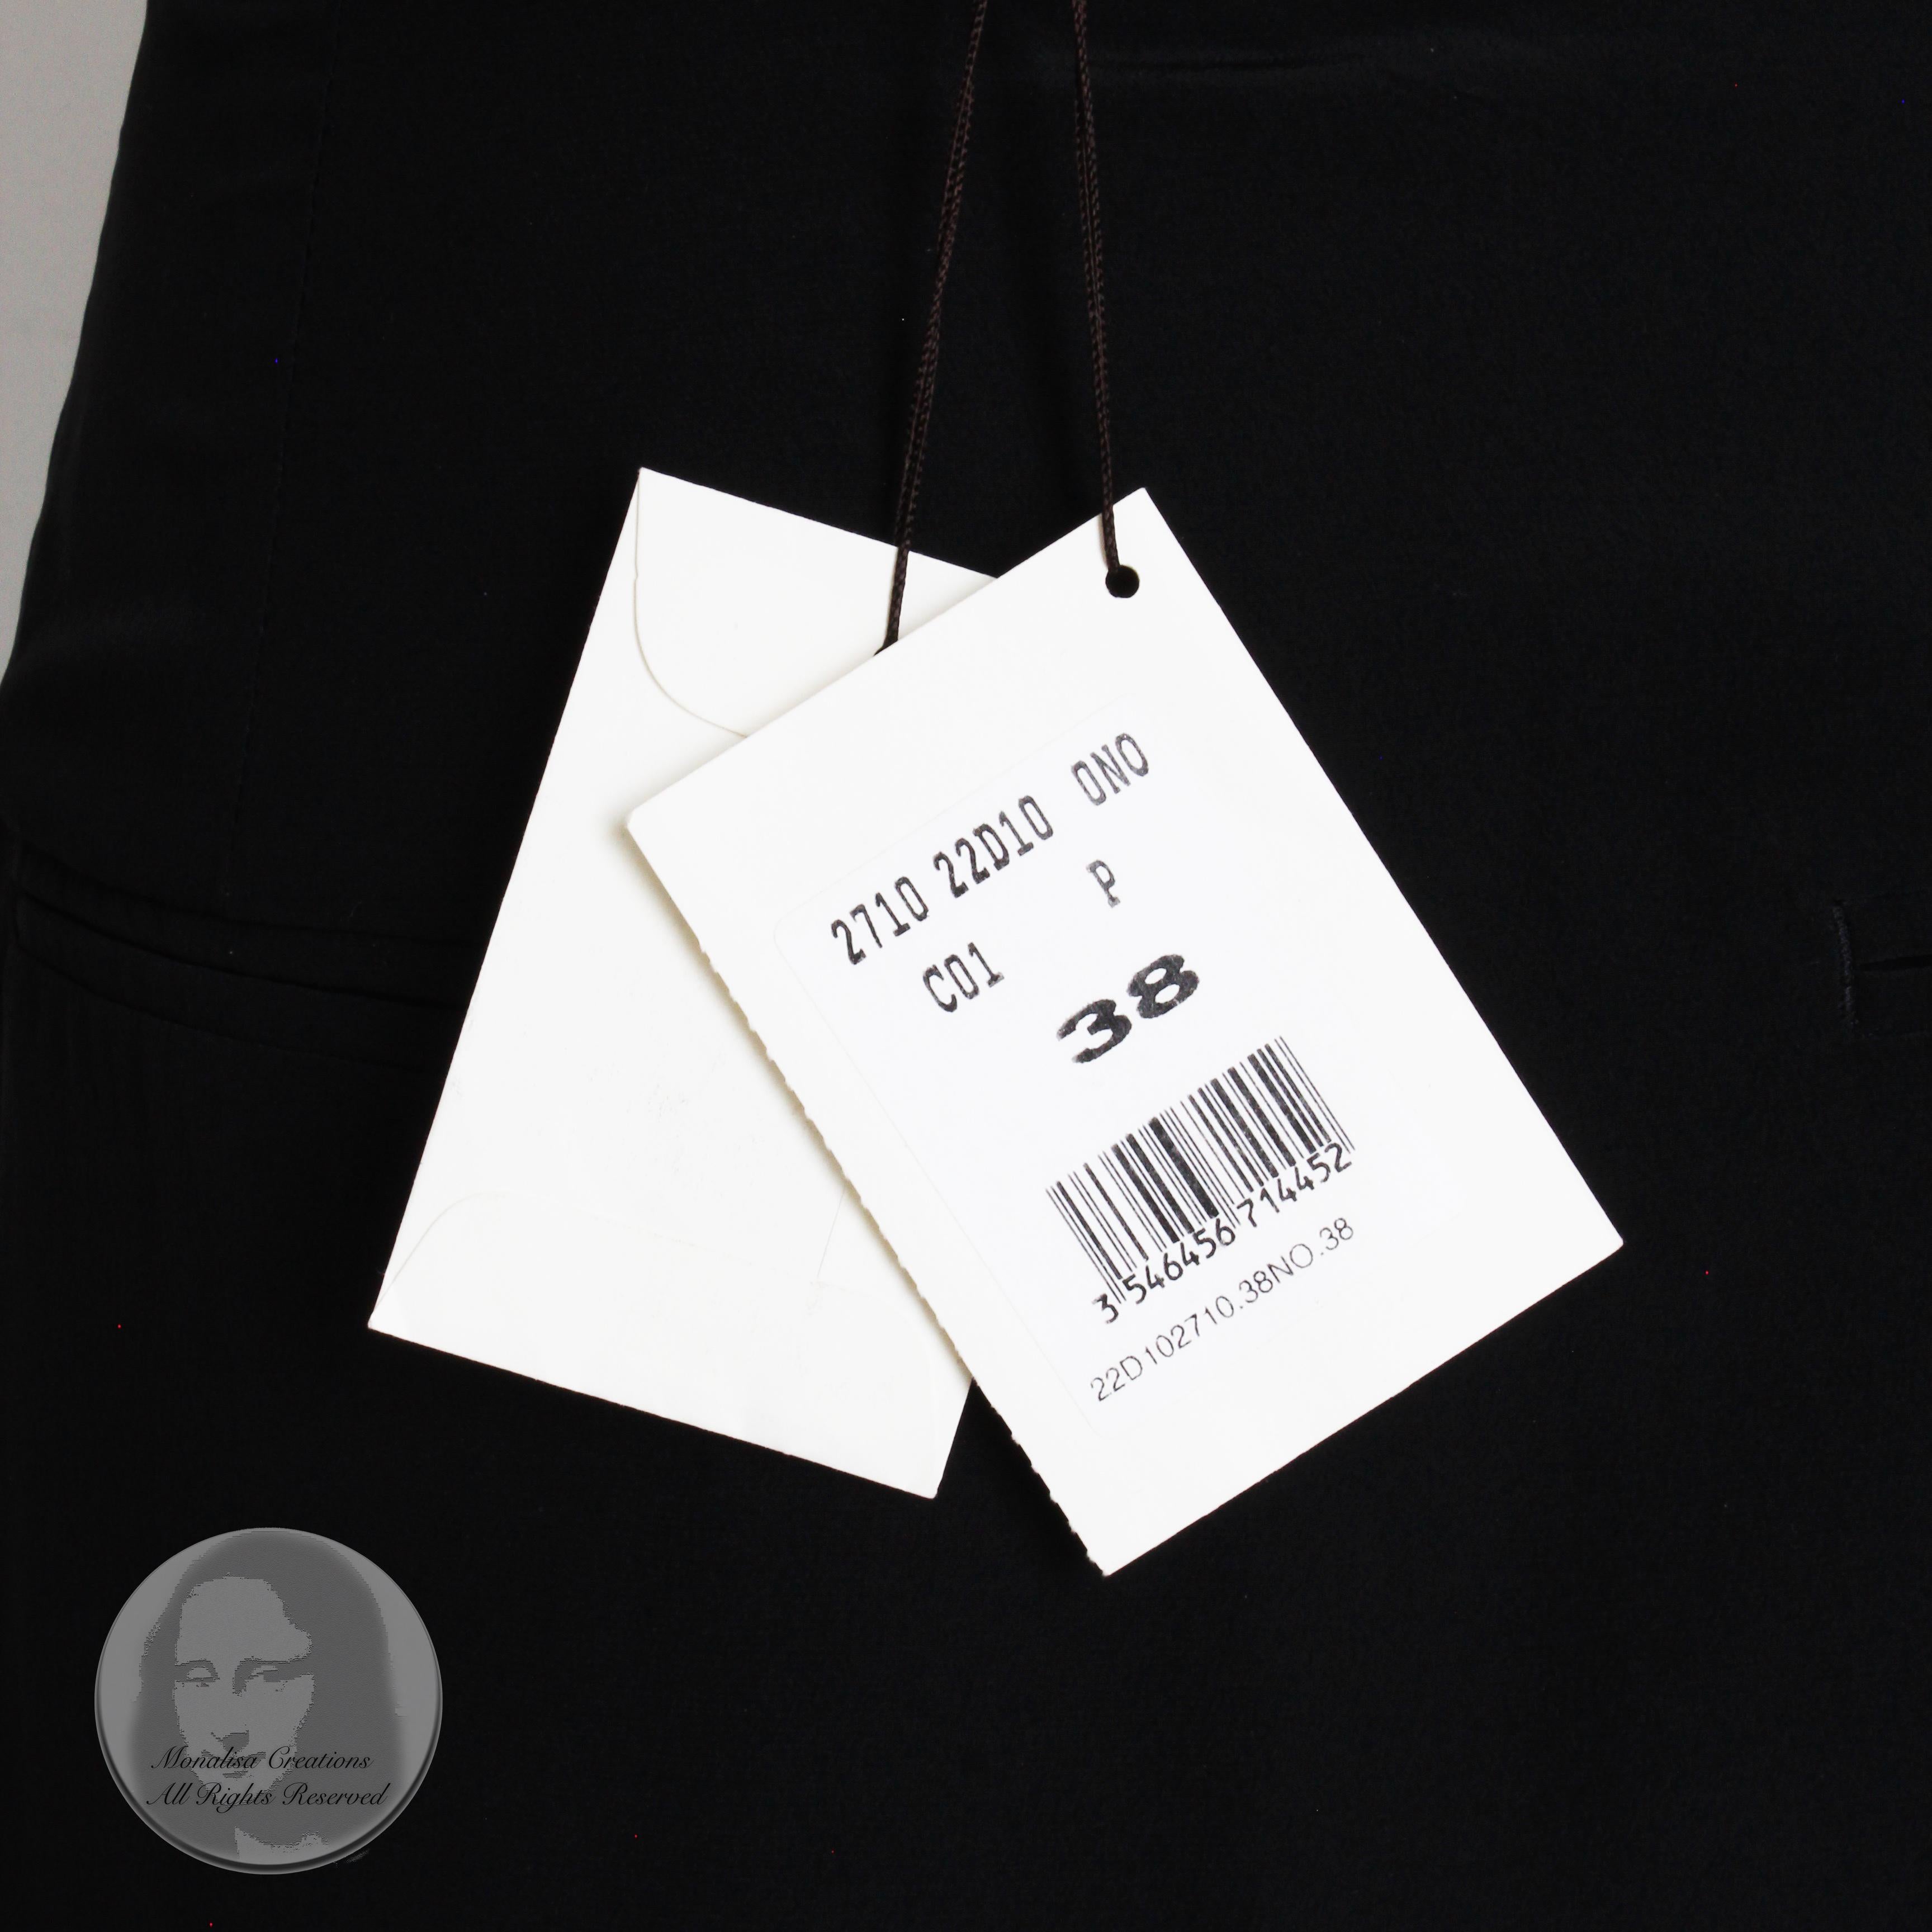 Celine Paris Silk Skirt Button Front Patch Pocket Phoebe Philo Black NWT Size 38 For Sale 4